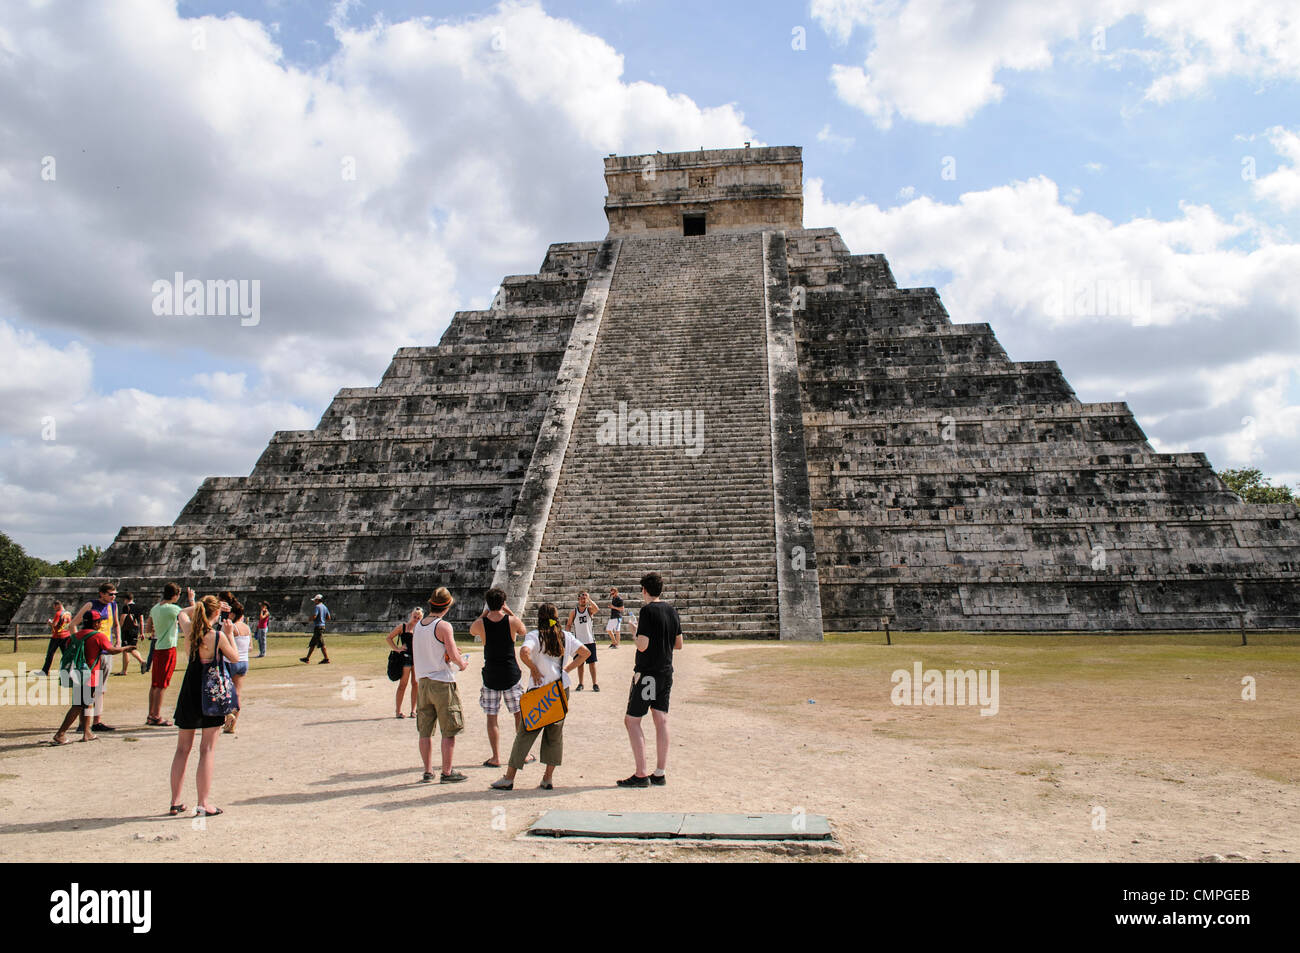 CHICHEN ITZA, Mexiko - eine Gruppe von Touristen, die in den Tempel des Kukulkan (El Castillo) in Chichen Itza Archäologische Zone, Ruinen eines großen Maya Zivilisation Stadt im Herzen der mexikanischen Halbinsel Yucatan. Stockfoto